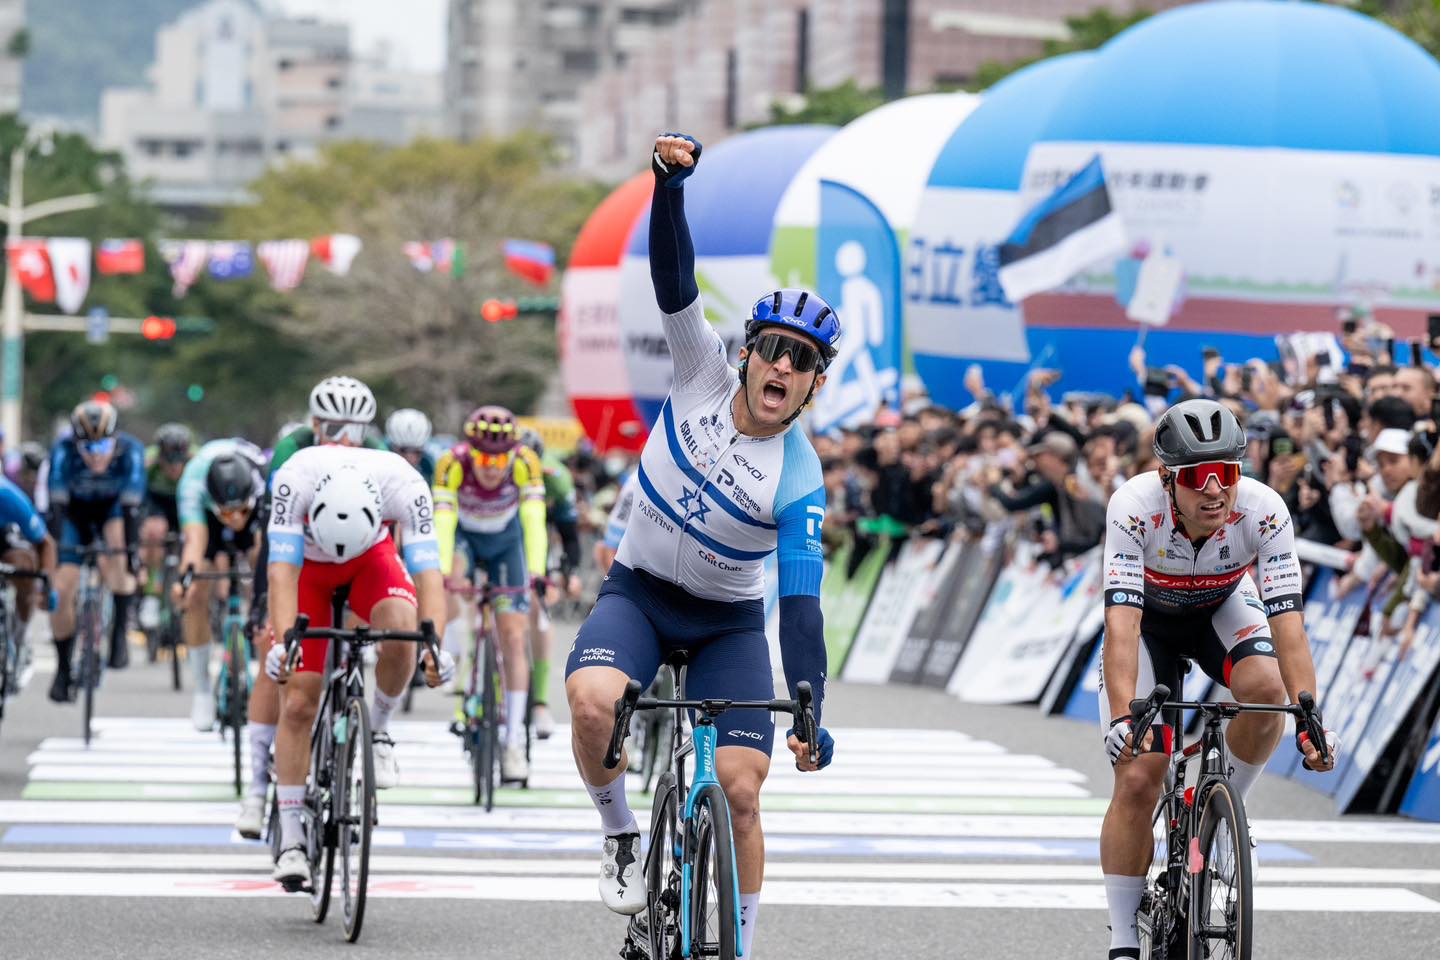 Classement de la 1ère étape du Tour de Taiwan, remportée par Itamar Einhorn.